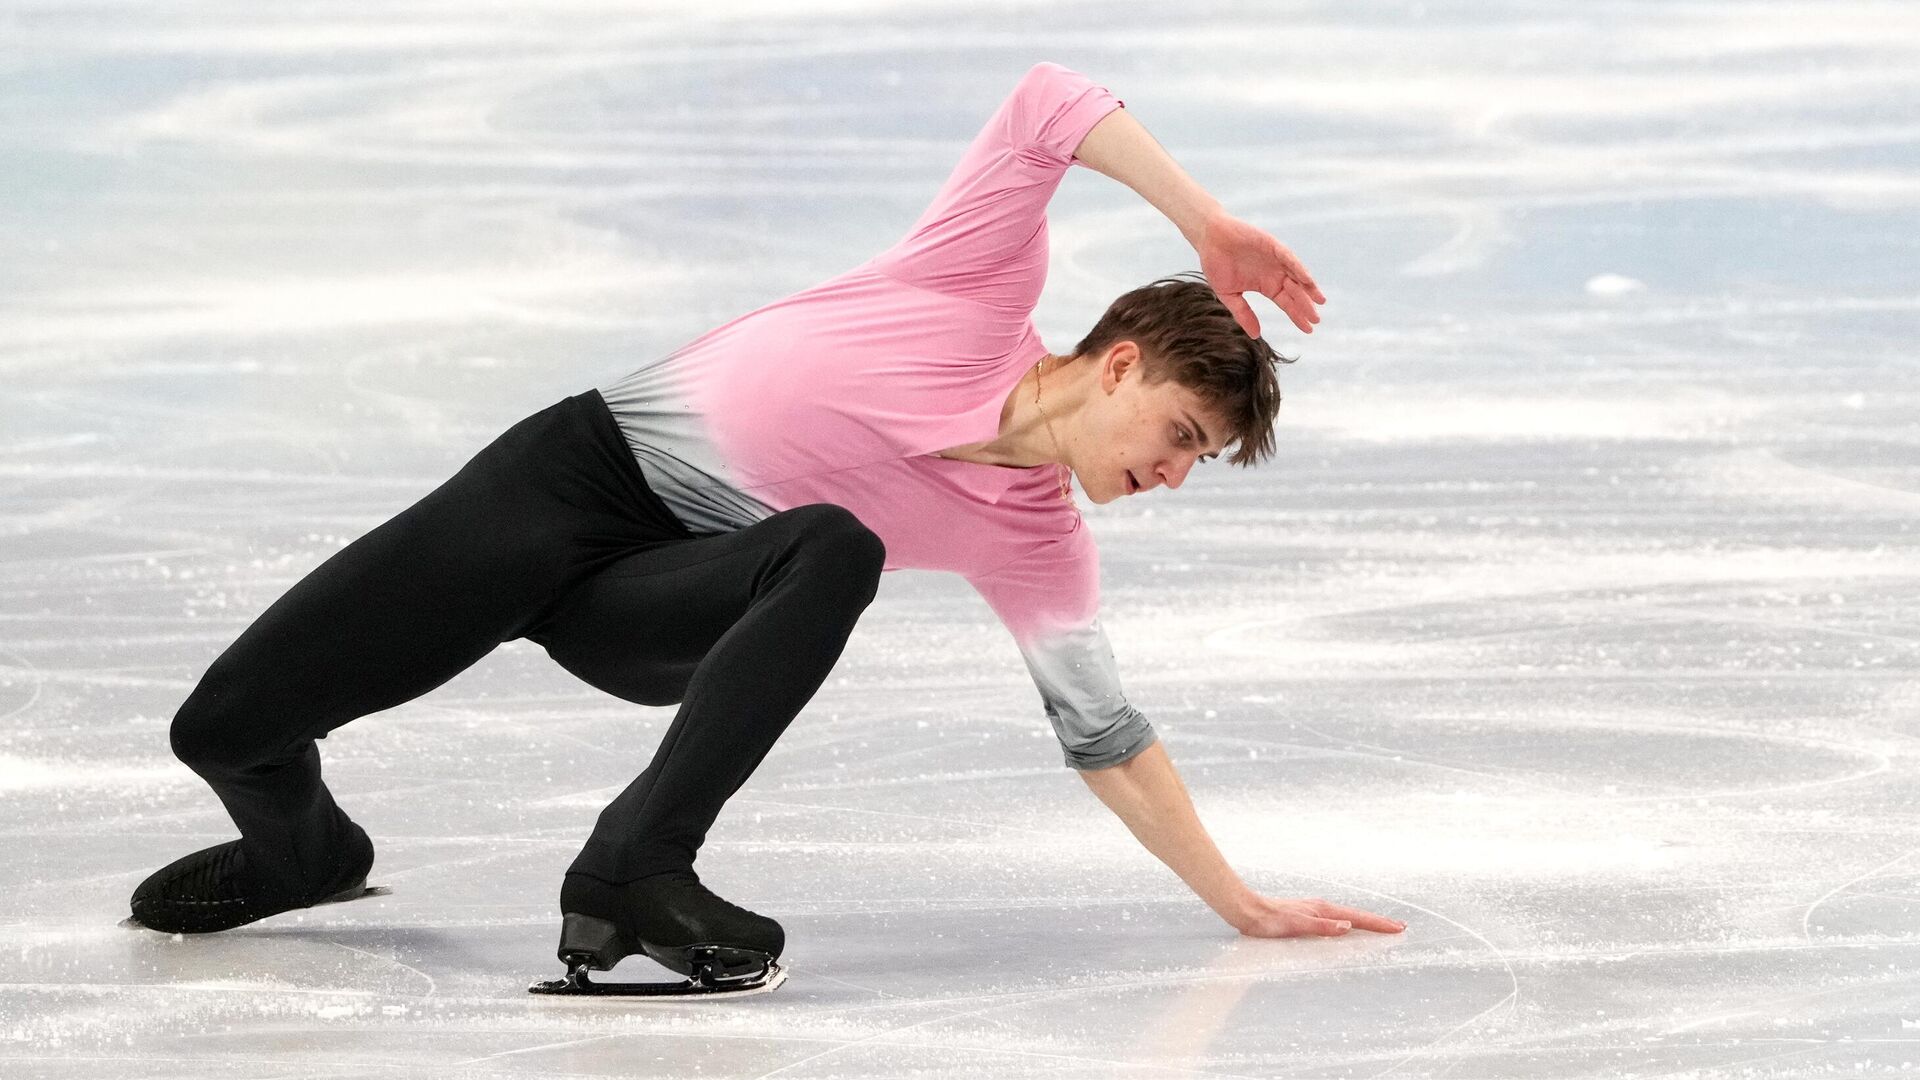 Denis Vasiliev Figure Skater